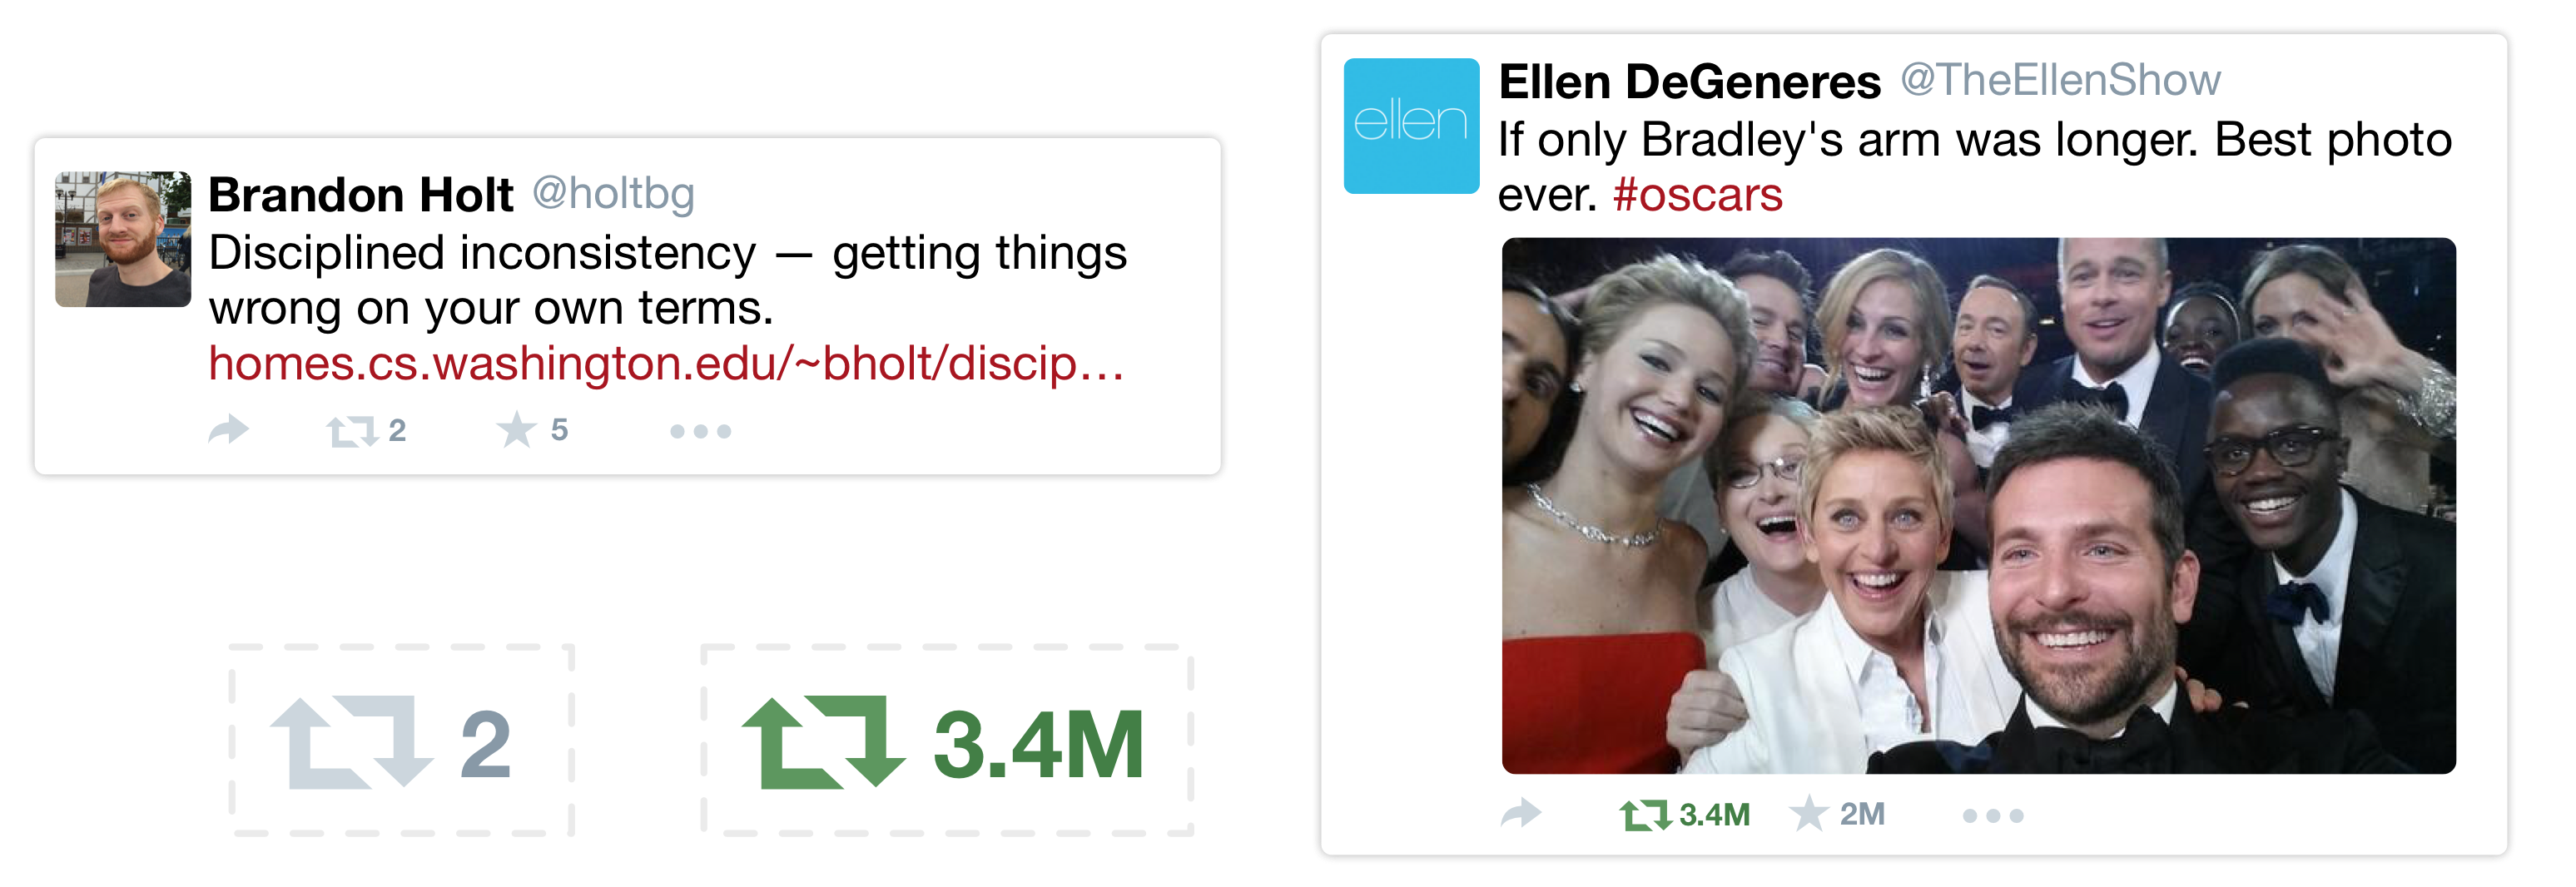 My tweet vs Ellen's tweet